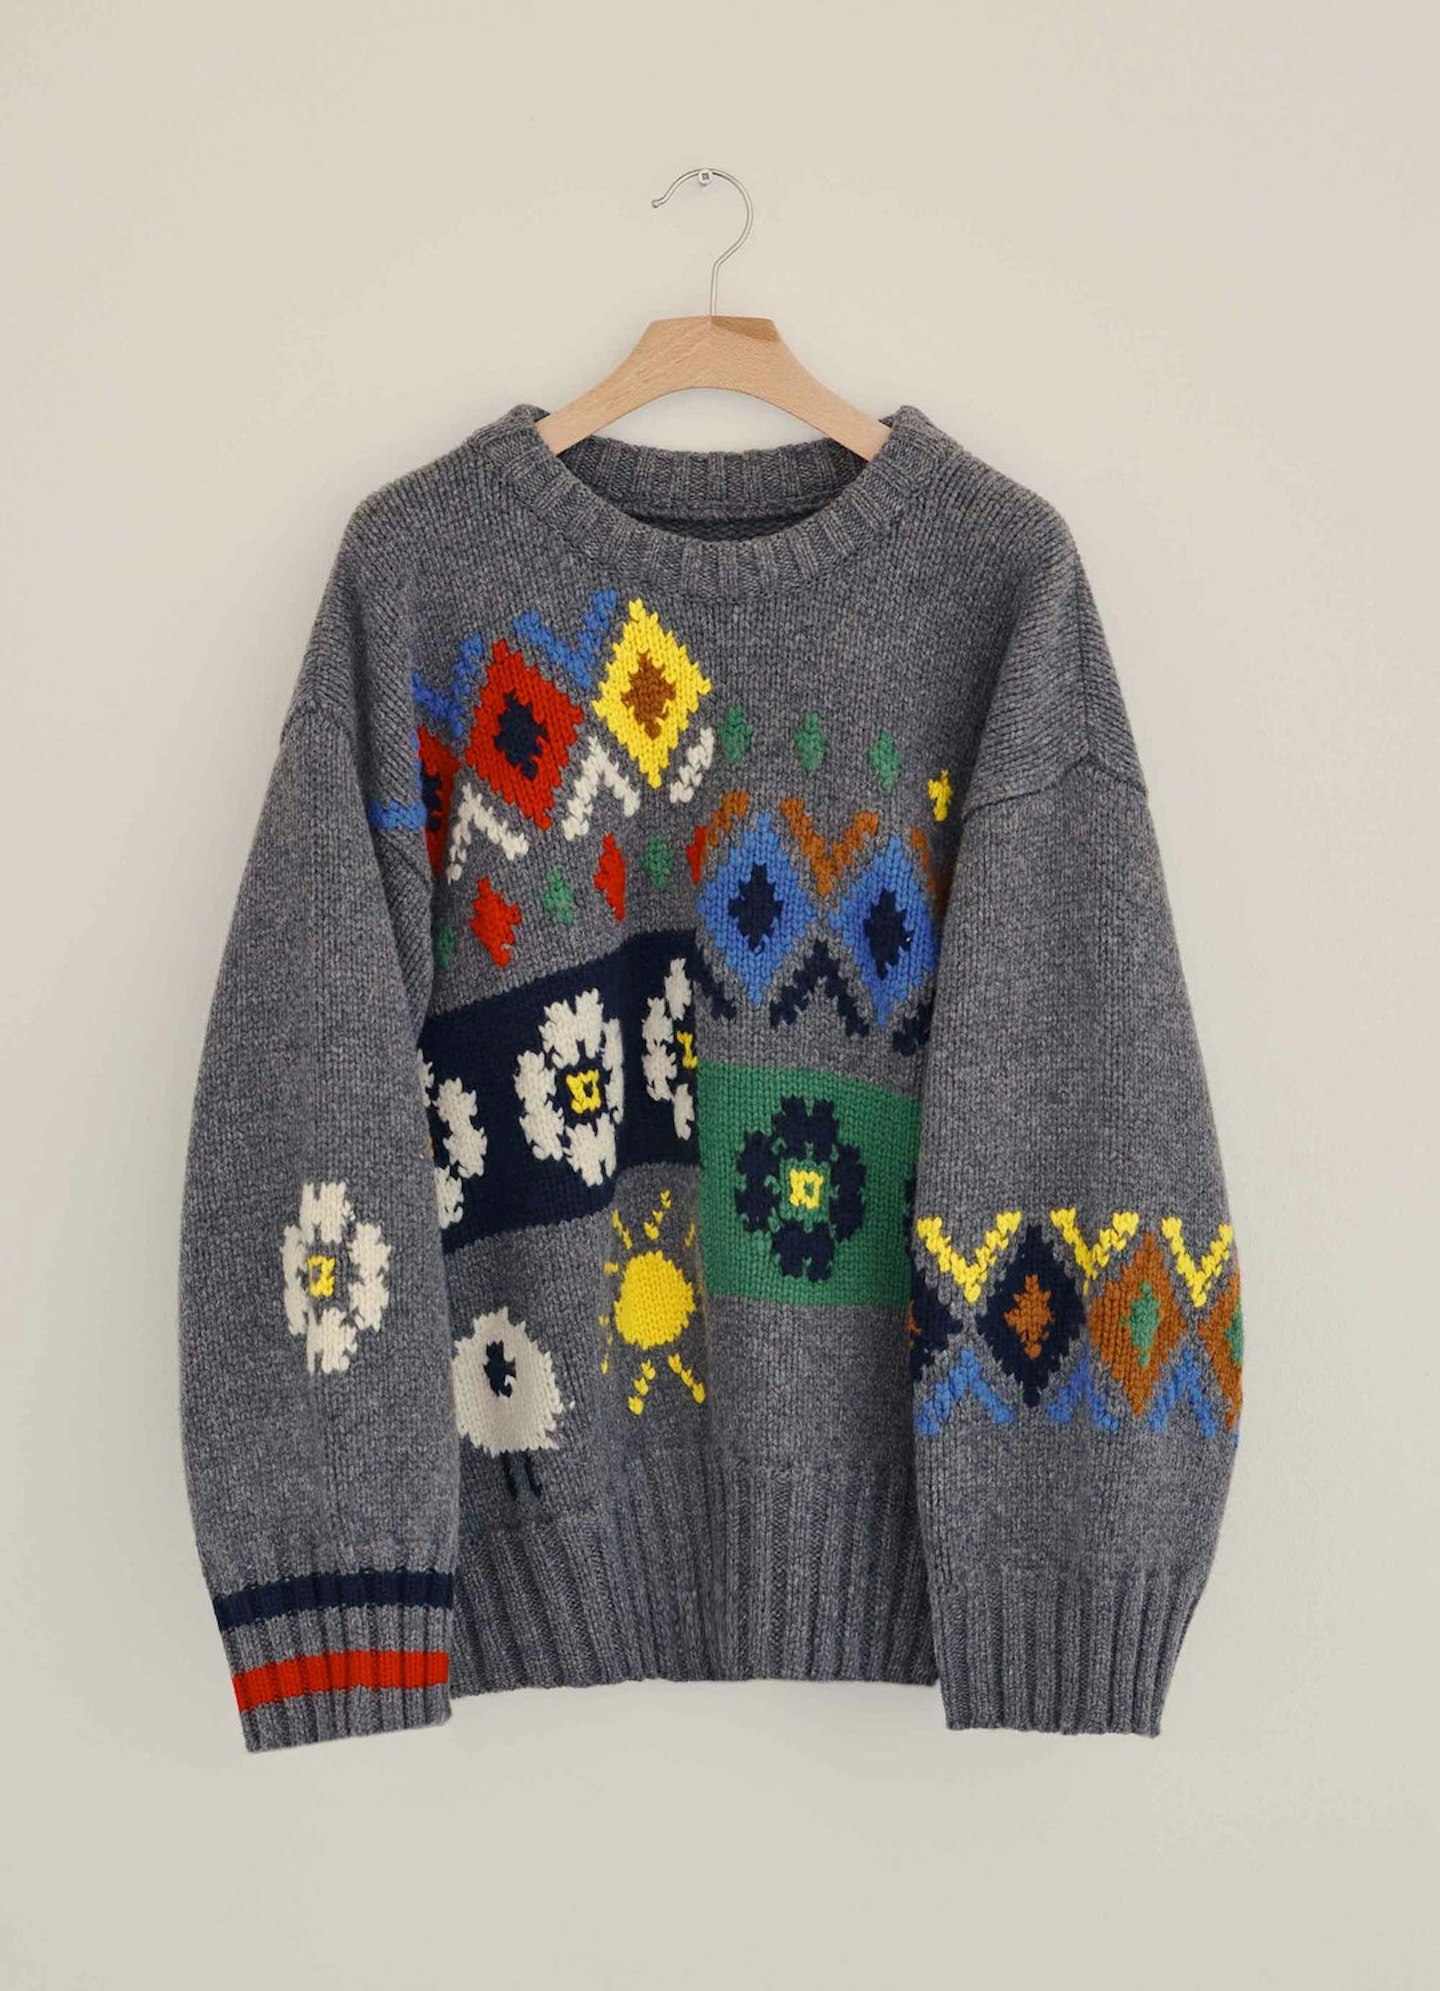 & Daughter, Winter Market Hand Knit Intarsia Jumper, £450